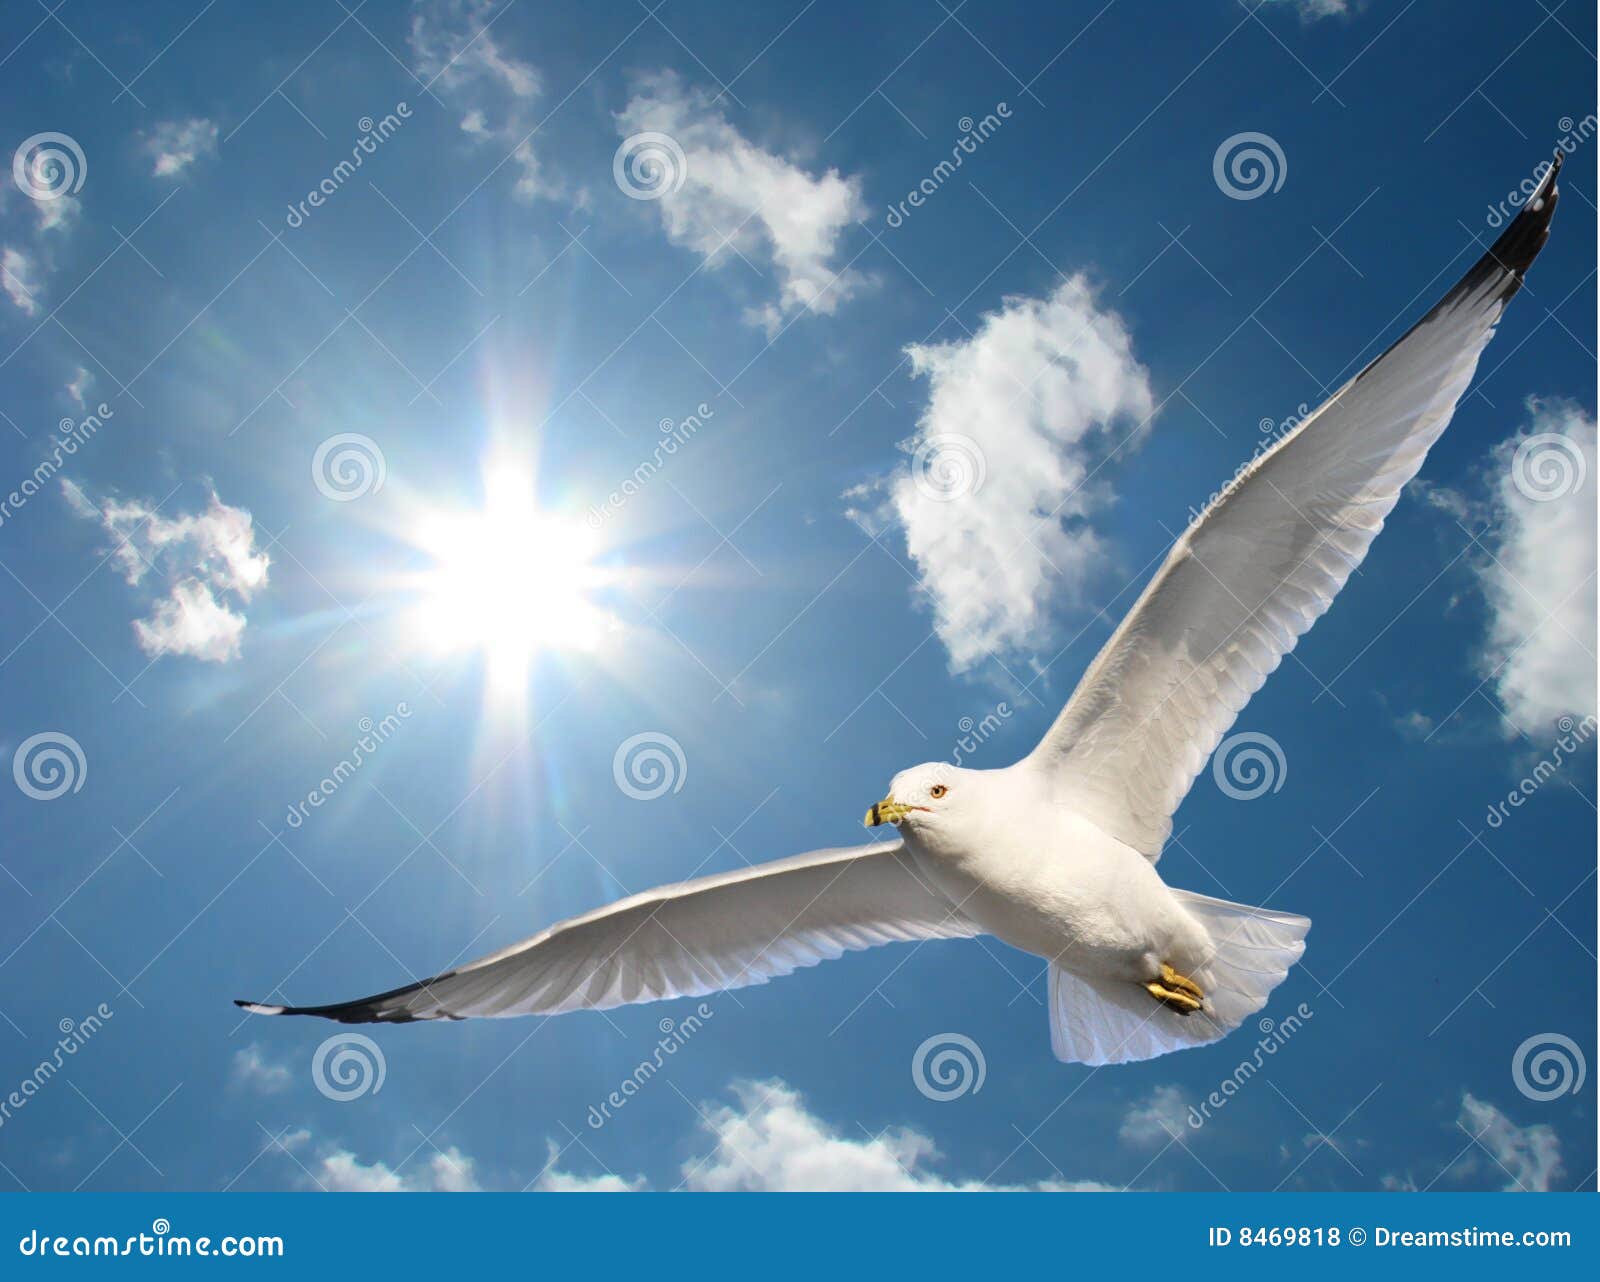 Heaven bird. Птицы в небе. Чайка в небе. Птицы летают в небе. Птица парит в небе.